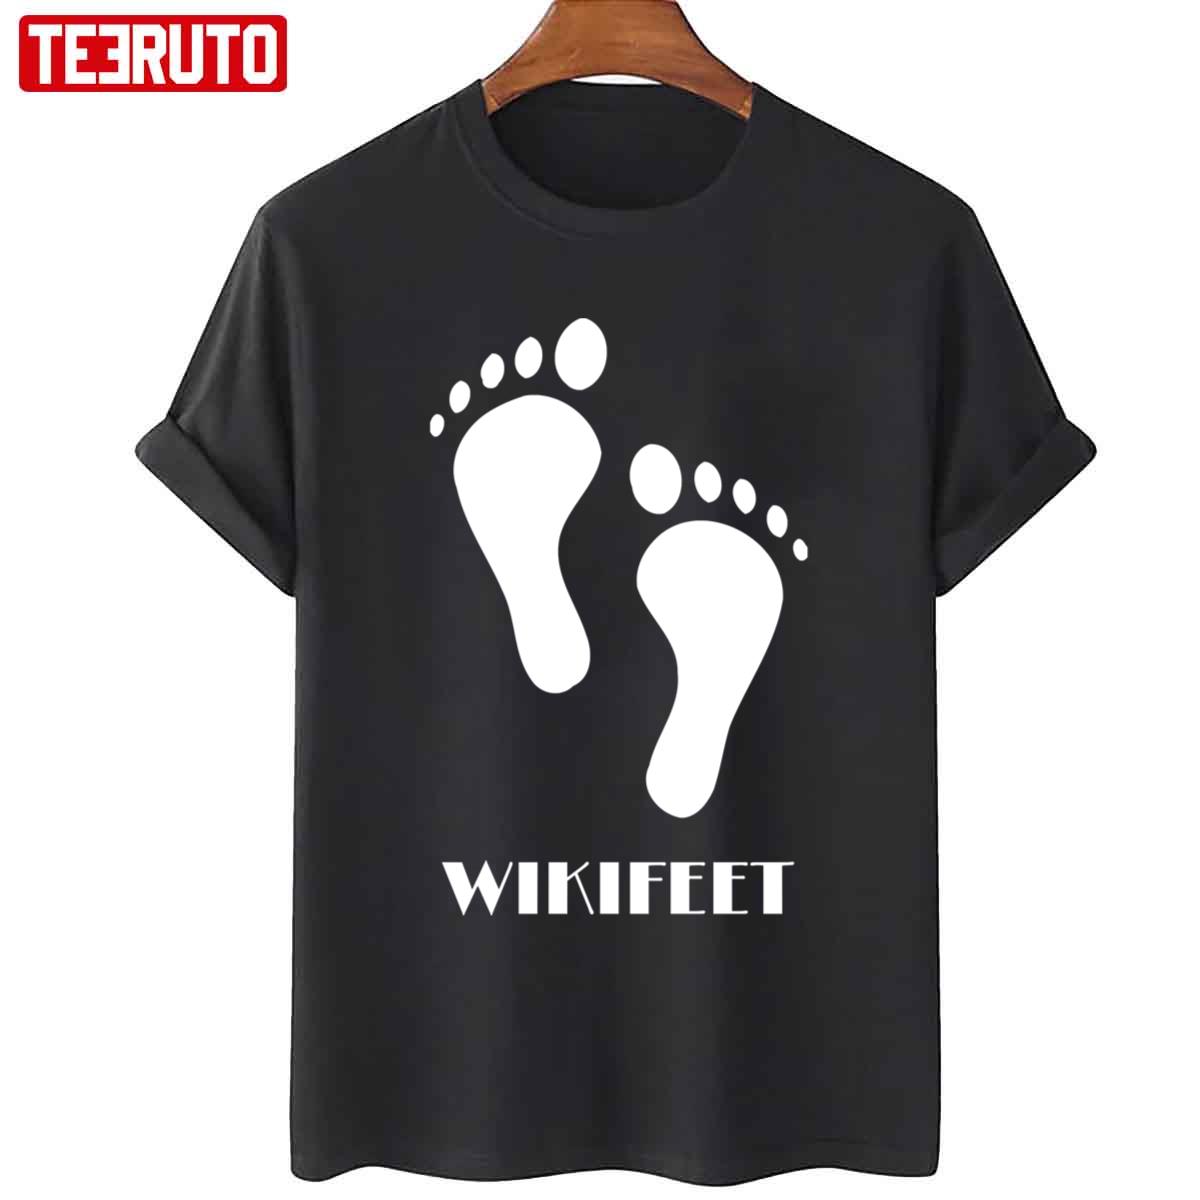 Wikifeet Unisex T-Shirt - Teeruto